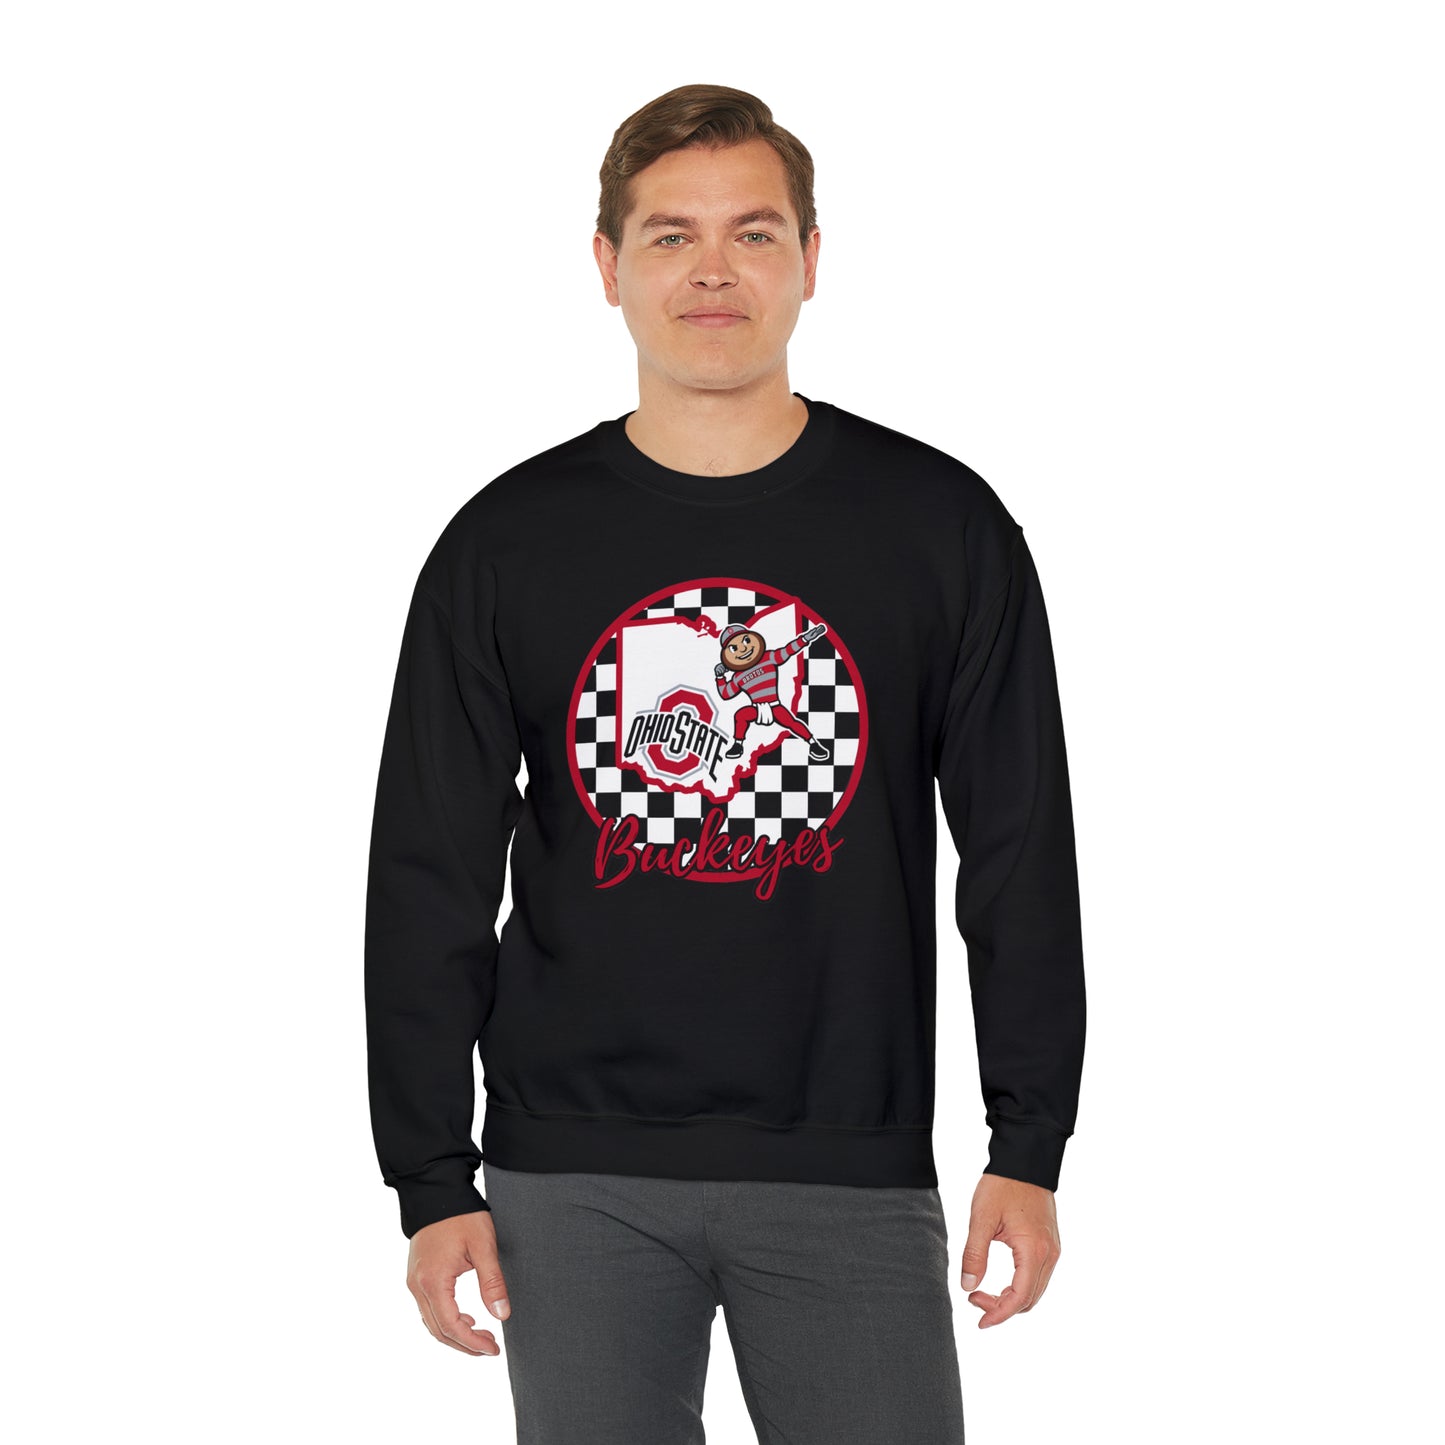 Ohio State Buckeyes Checkered Sweatshirt